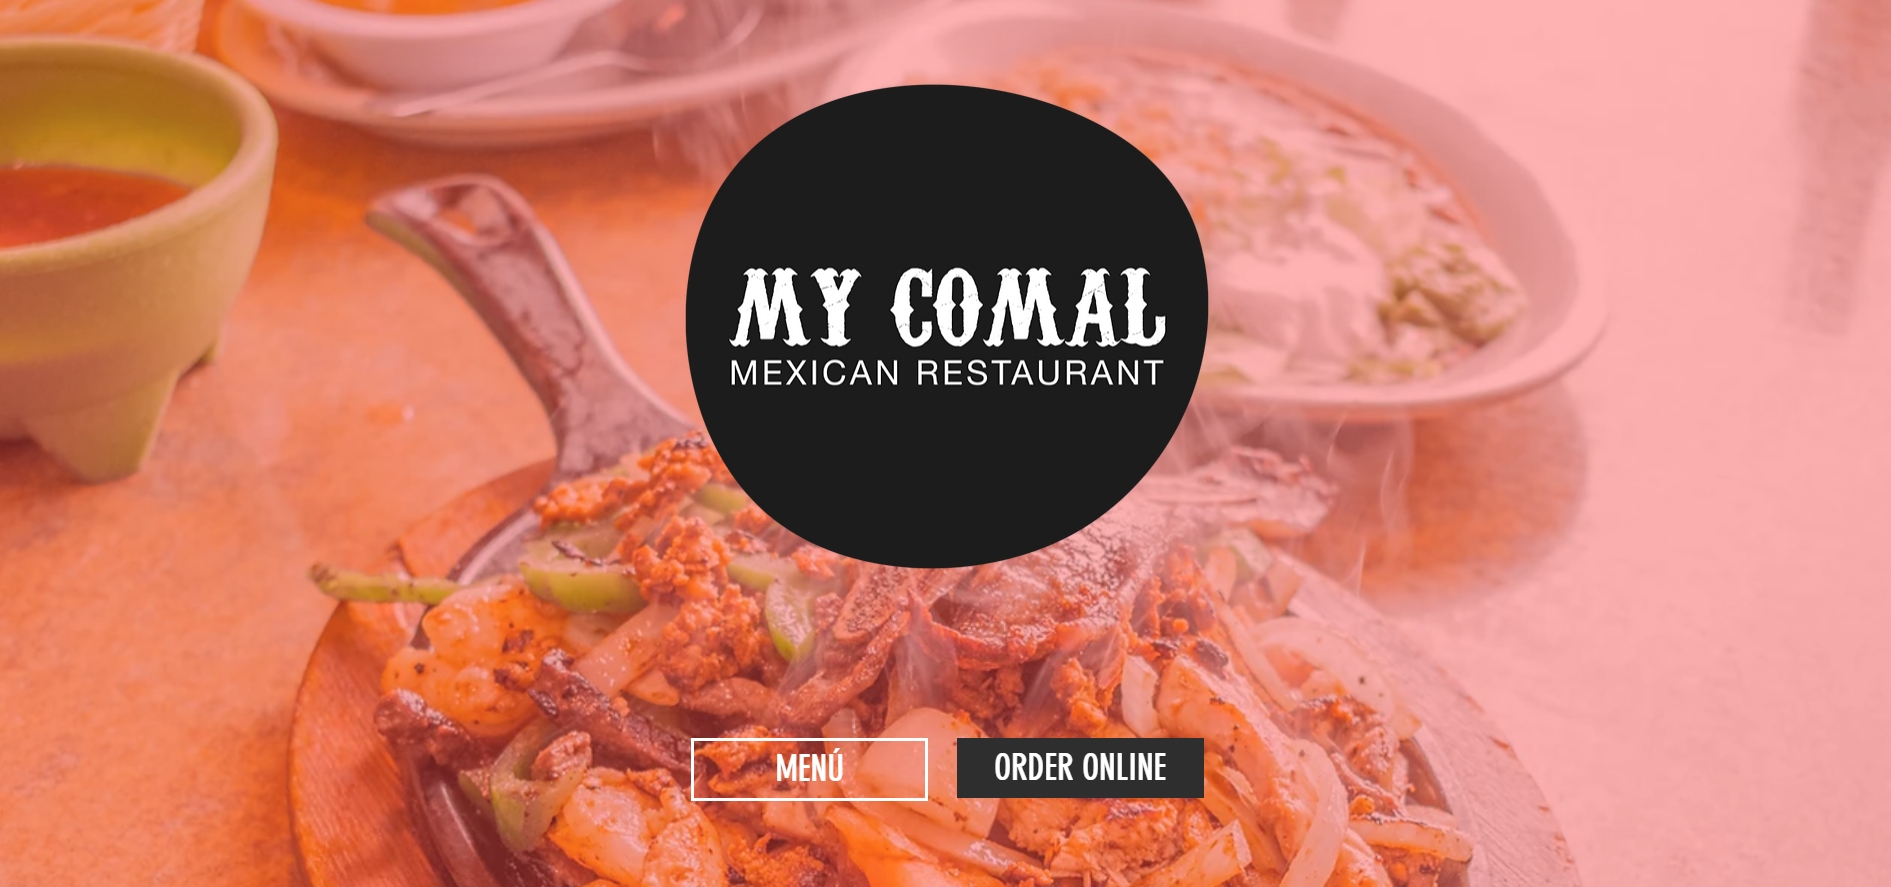 EL Comal Mexica Restaurant, TN